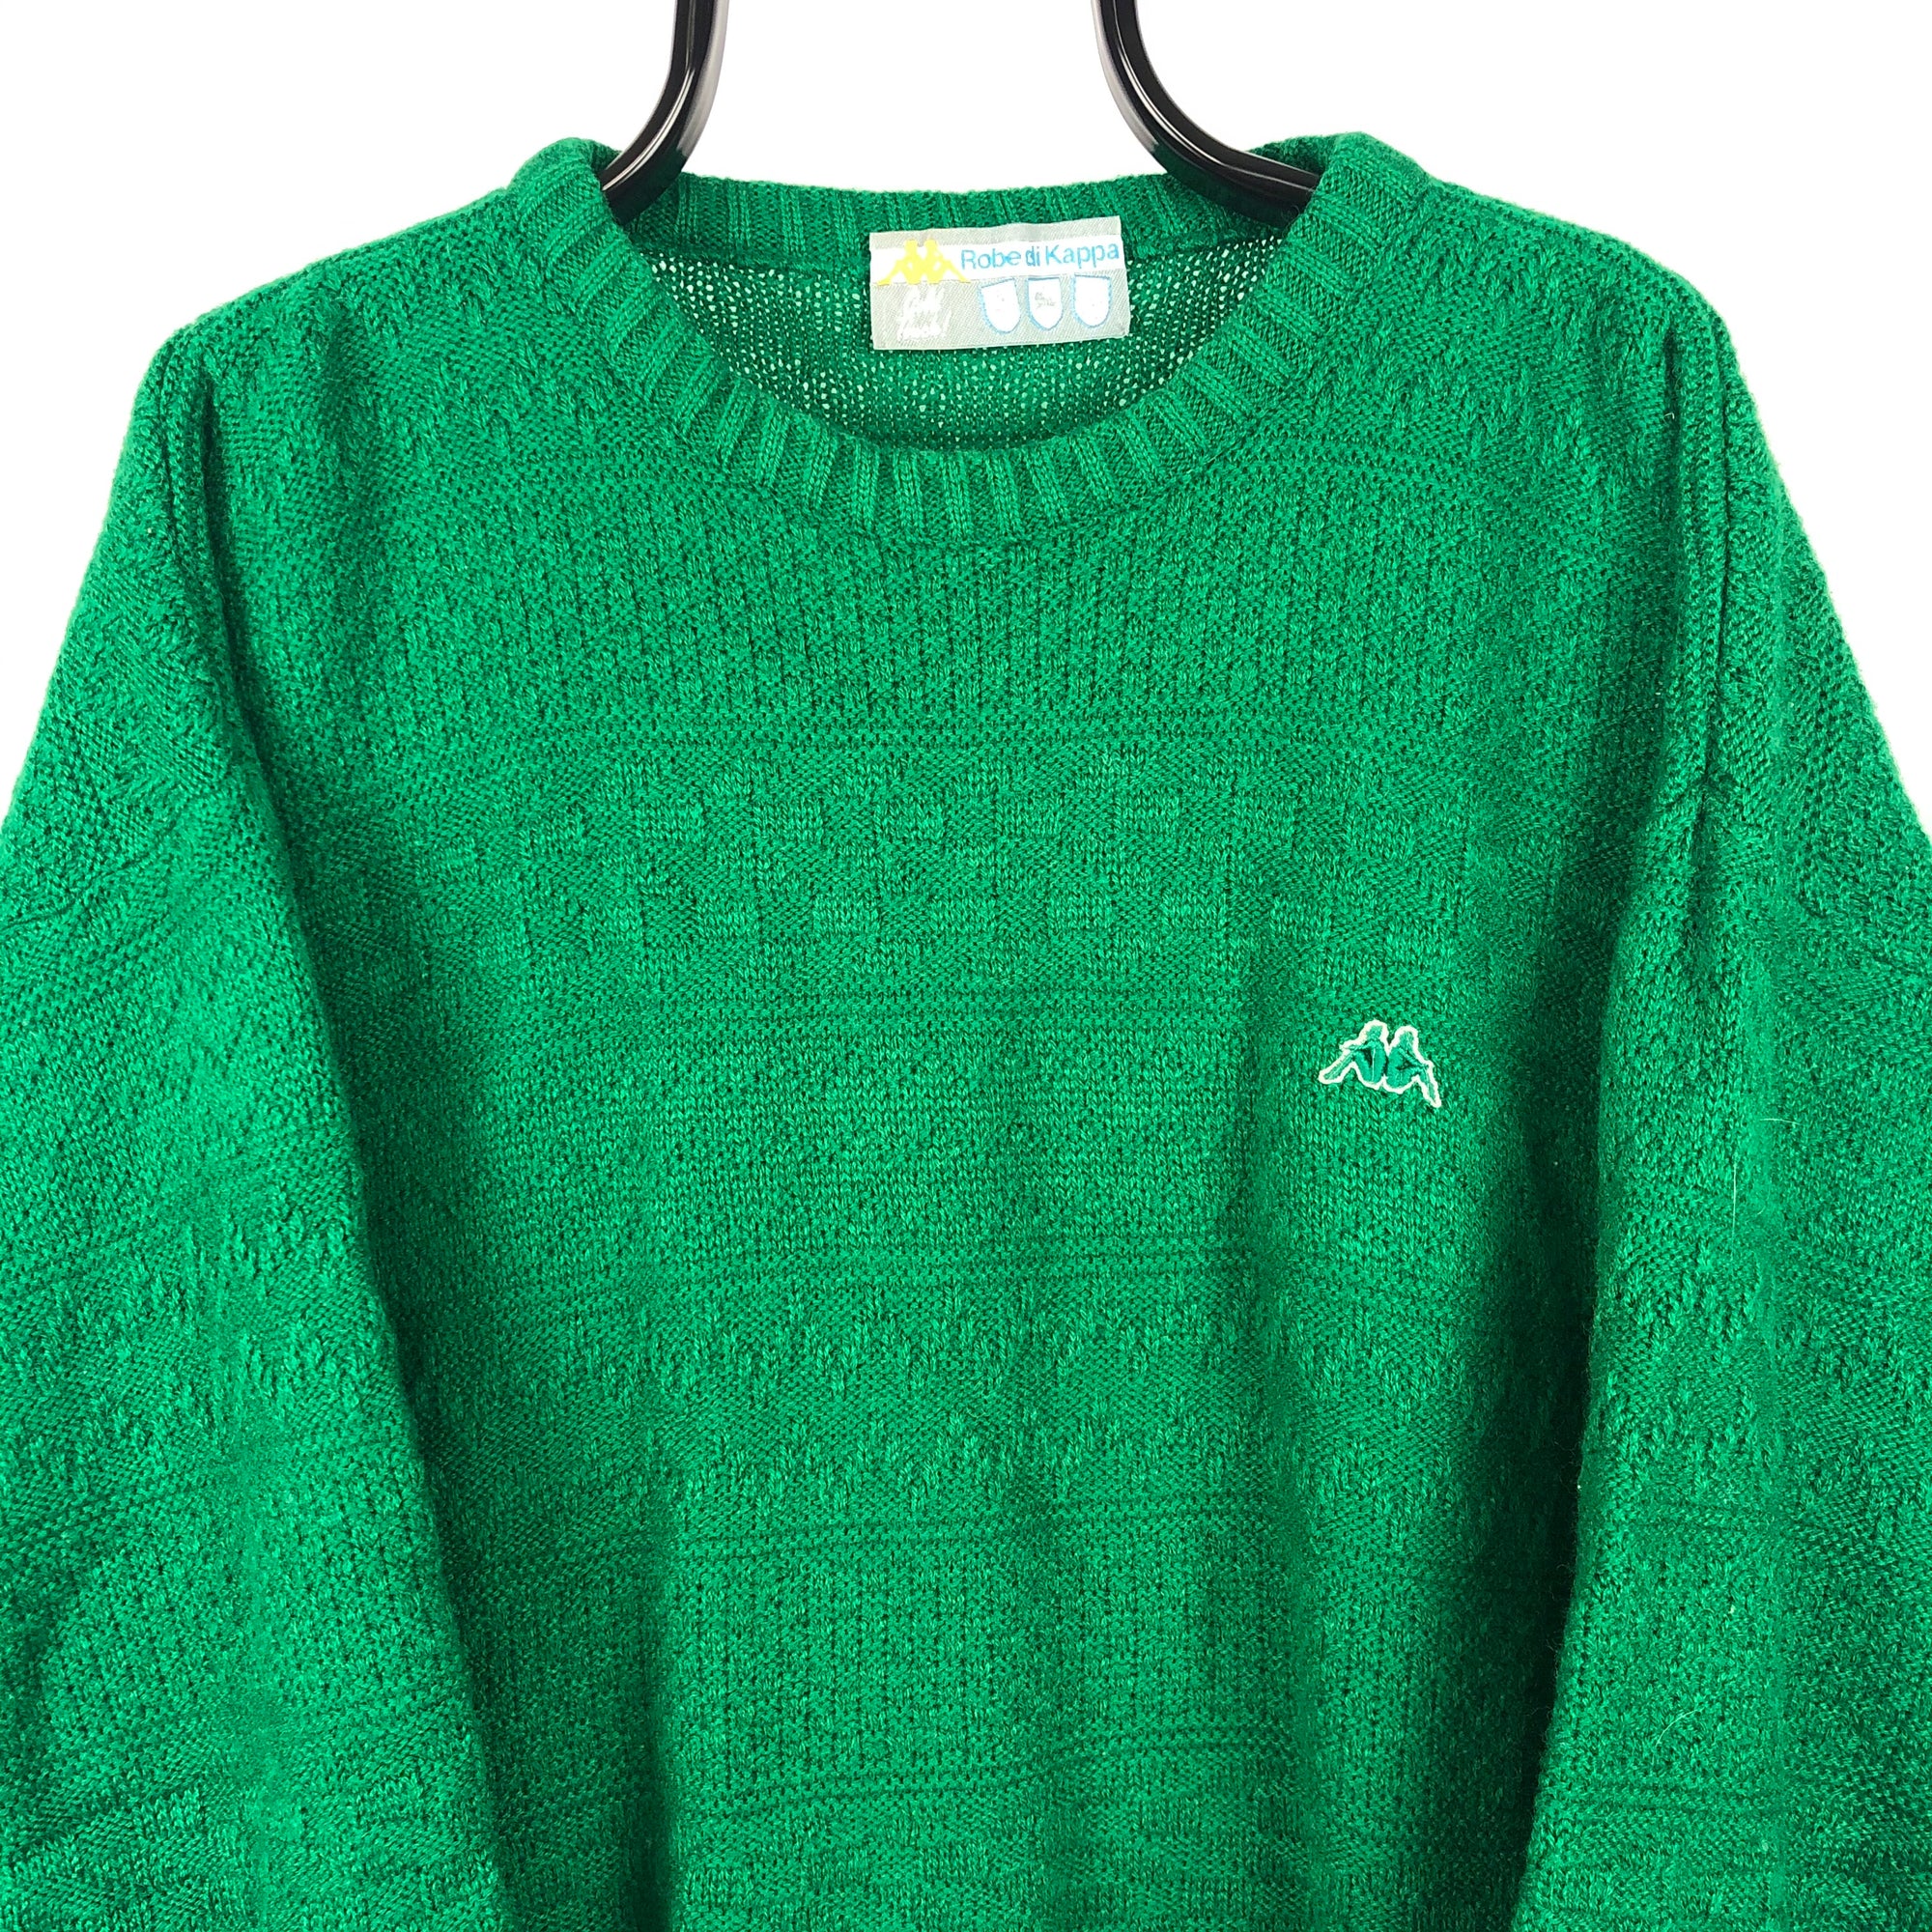 Vintage 80s Kappa Wool Sweatshirt in Green - Men's Large/Women's XL